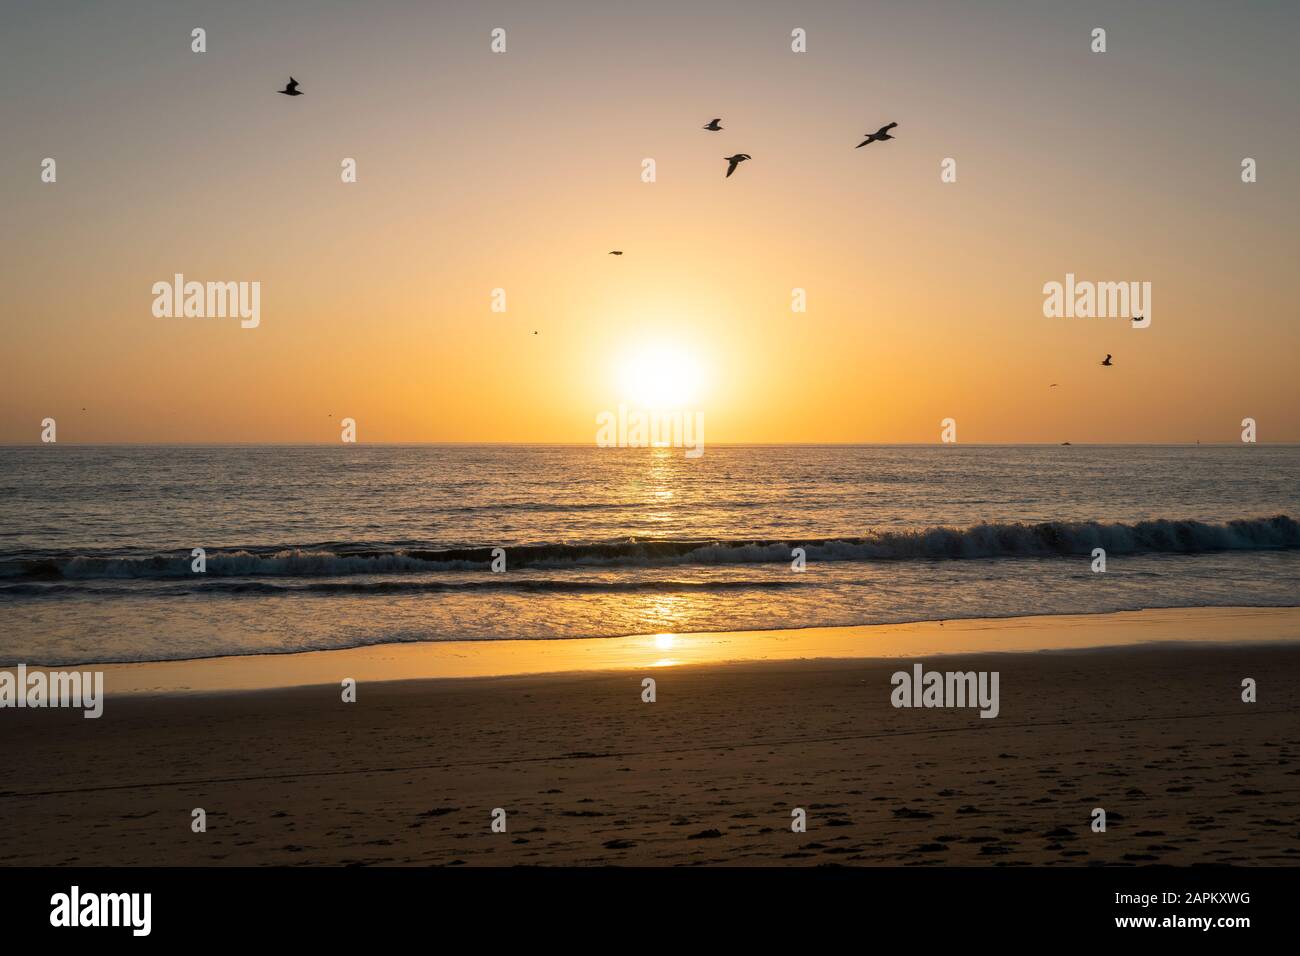 Estados Unidos, California, los Ángeles, Flock de aves volando sobre la playa costera del Océano Pacífico al atardecer Foto de stock